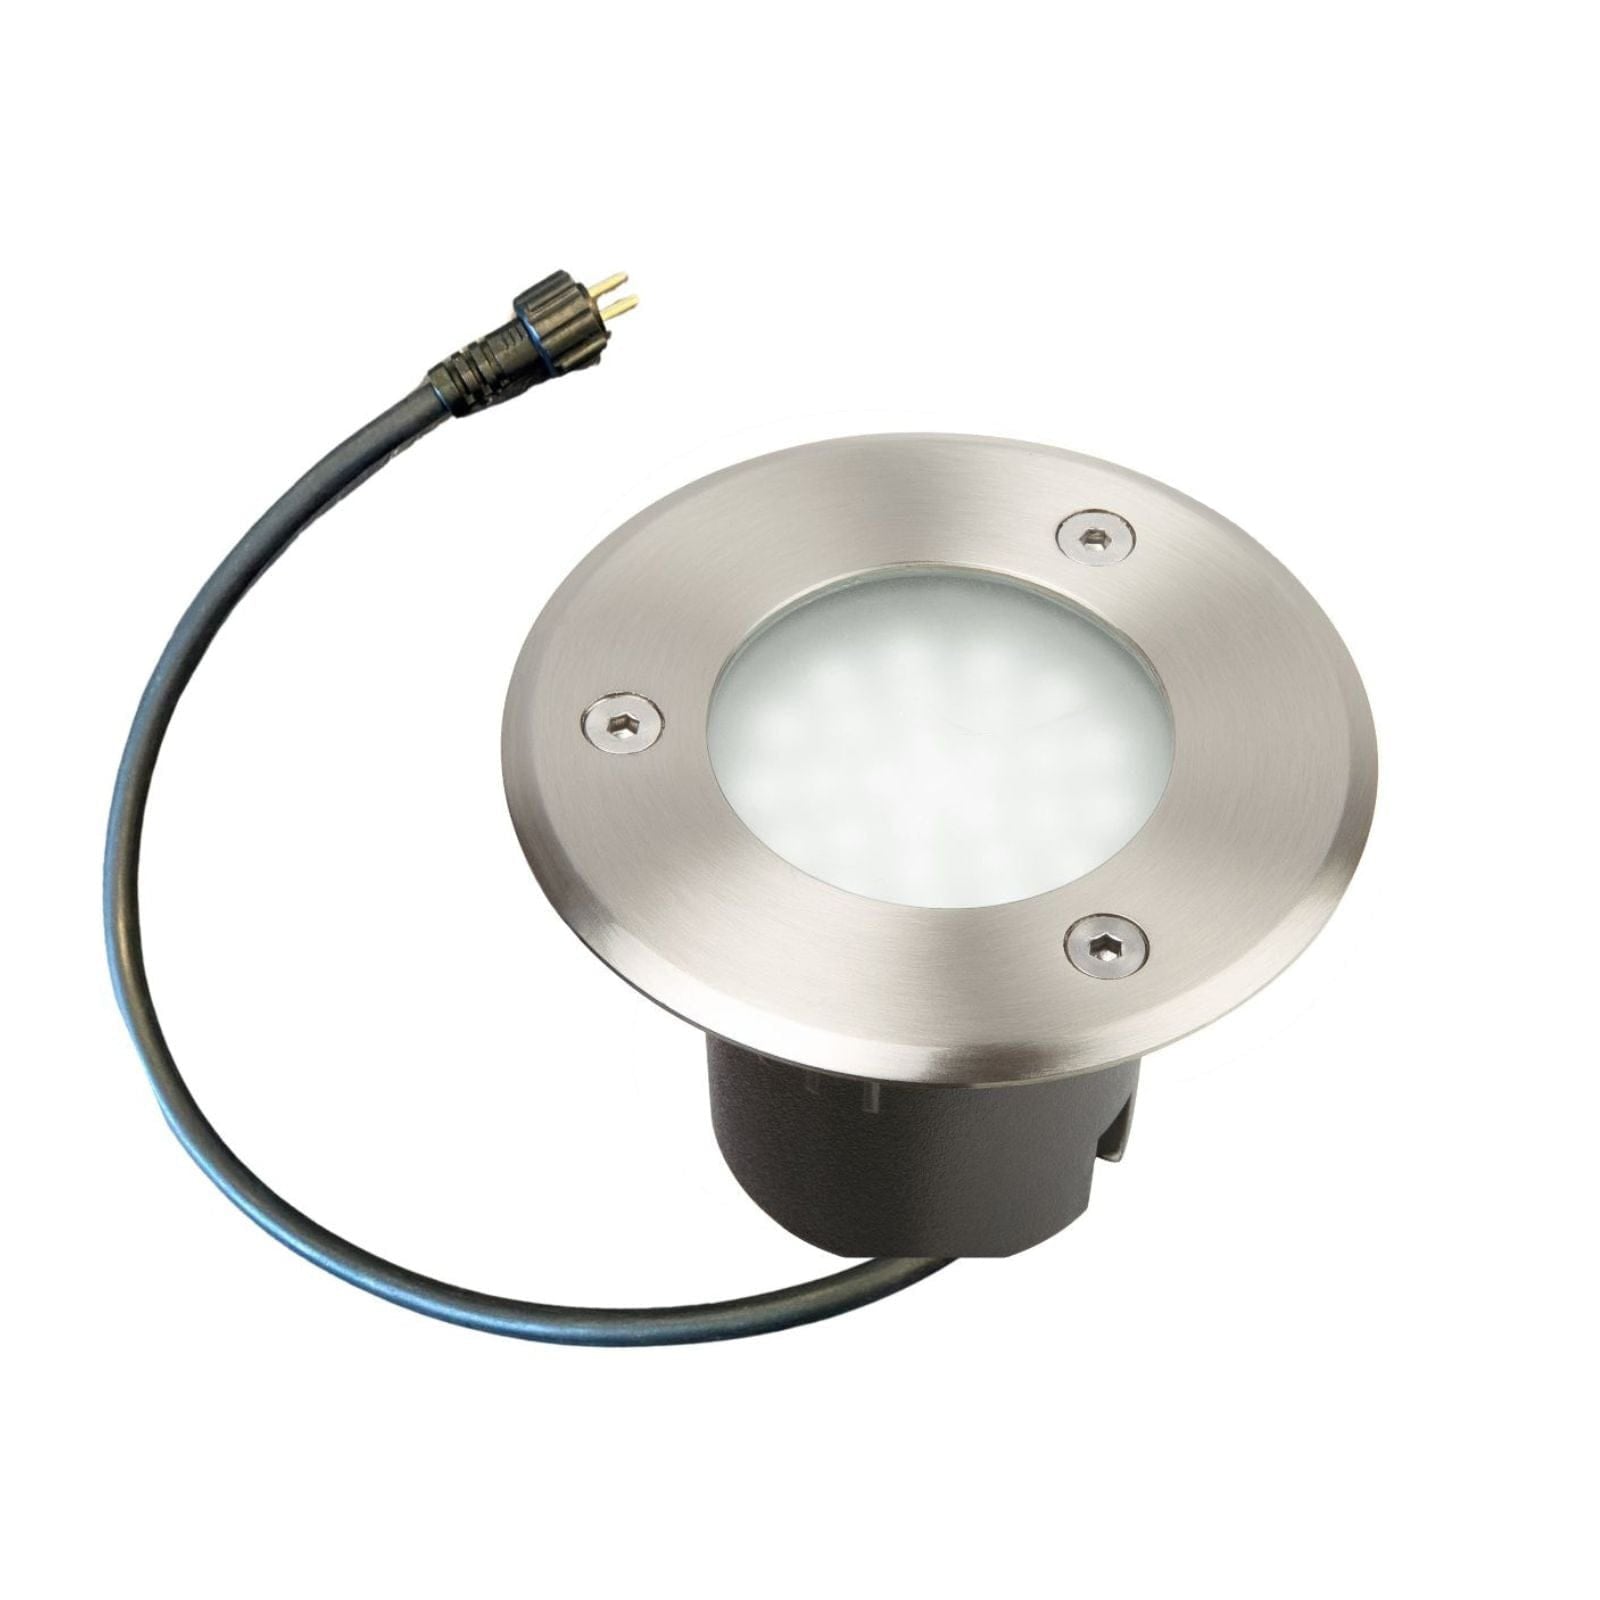 Spot encastrable leds intégrées diamètre 10cm - 230V - 500 lumens